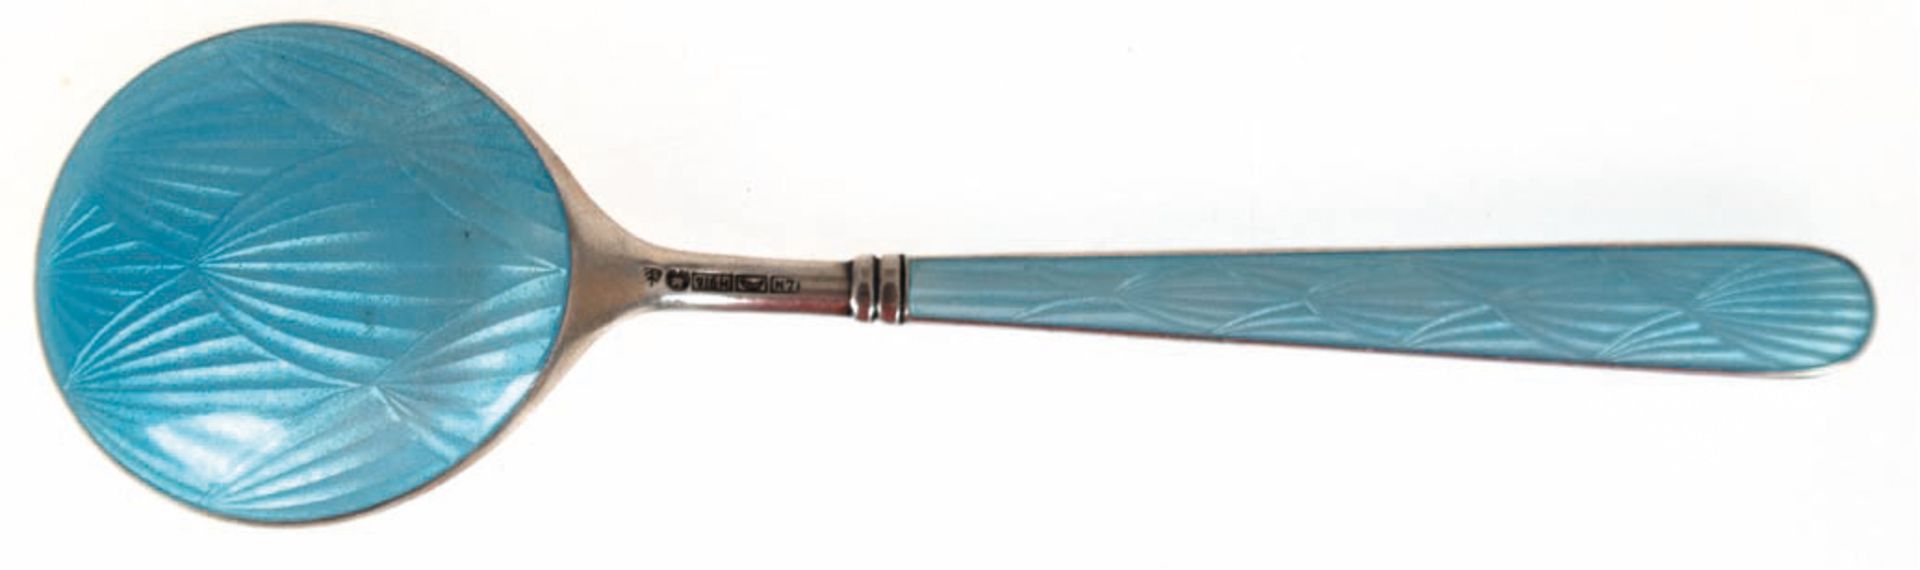 Zuckerlöffel, 916er Silber, guillochiert, hellblaue Transluzidemaille, punziert, ca. 29 g, L. 13 cm - Bild 2 aus 2